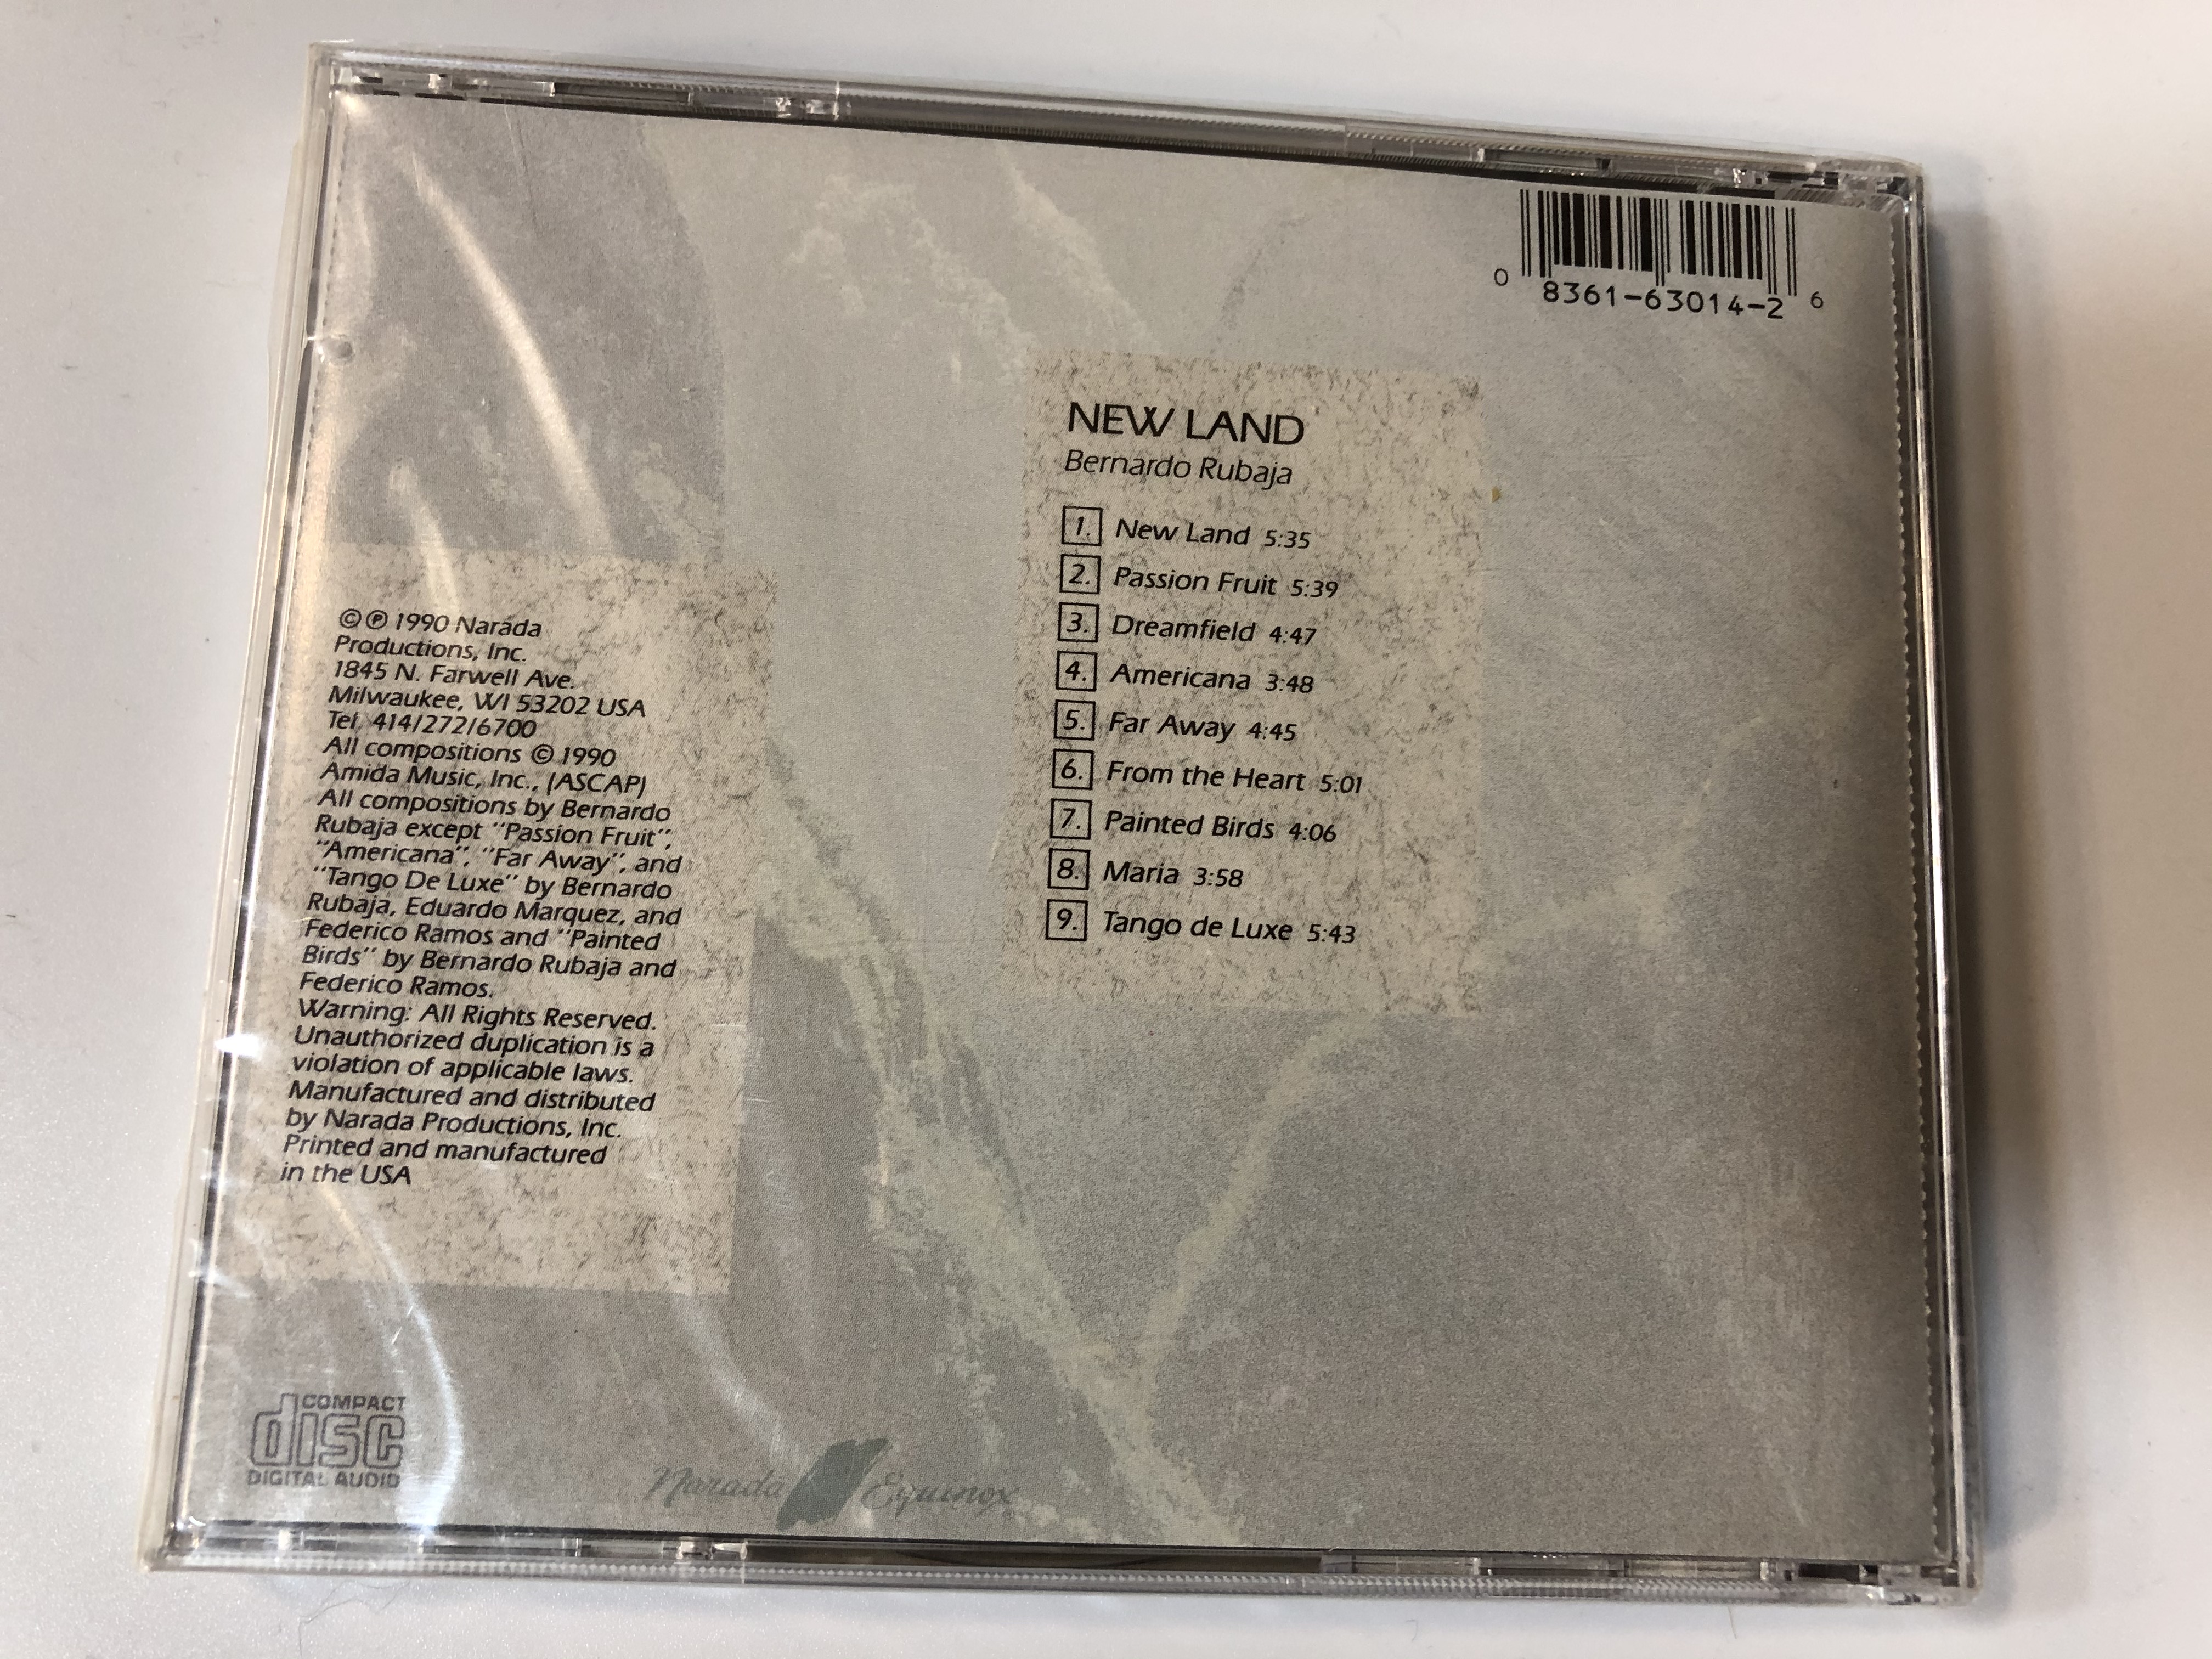 bernardo-rubaja-new-land-narada-equinox-audio-cd-1990-cd-3014-2-.jpg